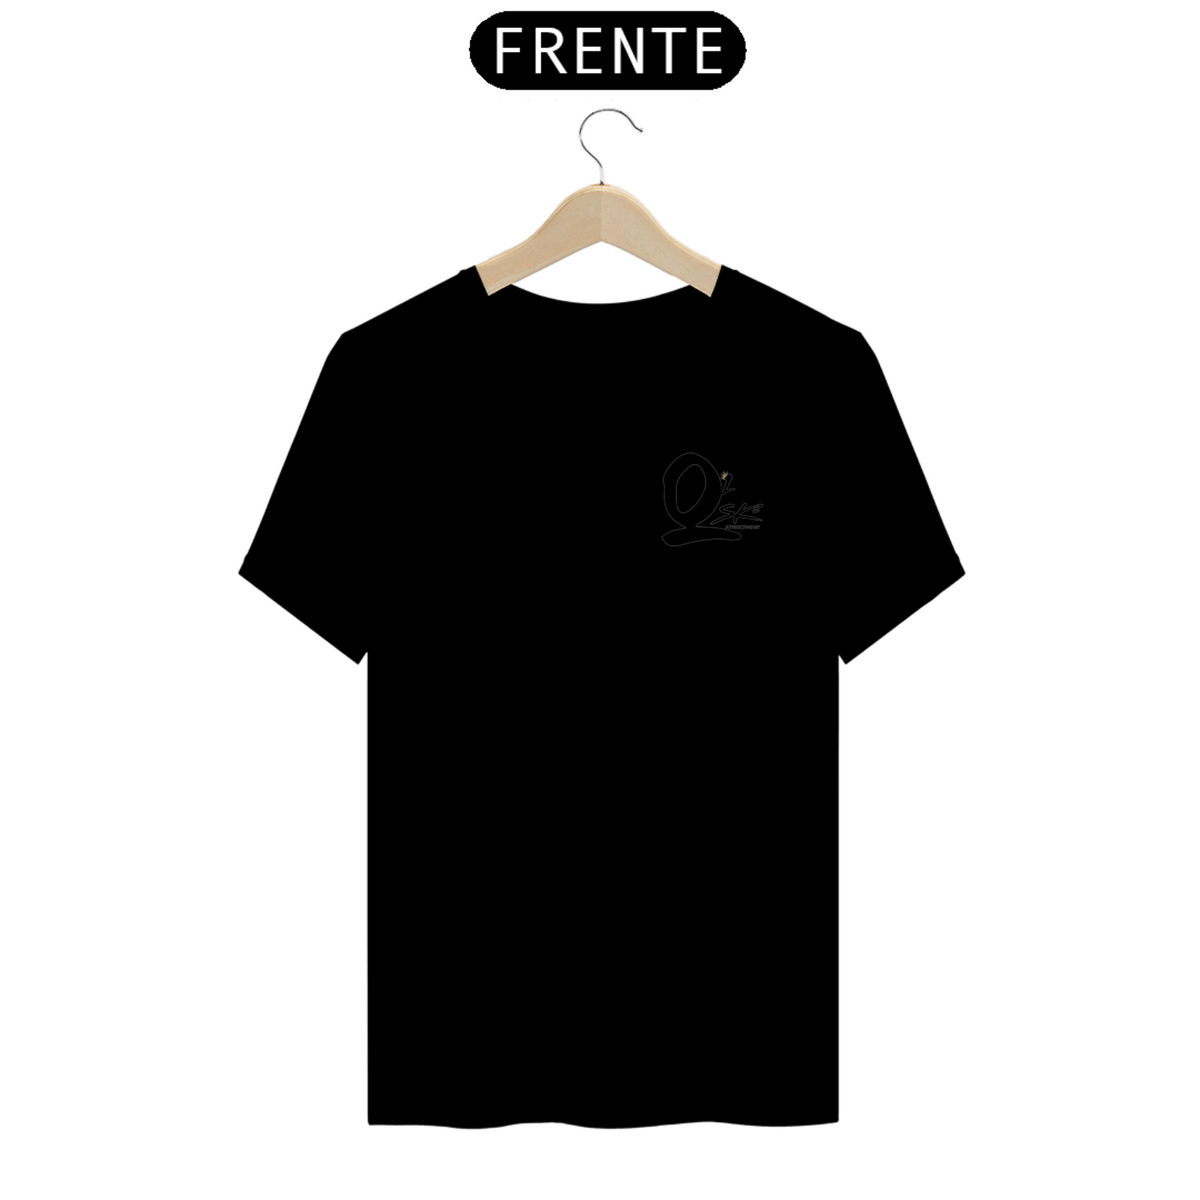 Nome do produto: T-Shirt Classic, Camisa promocional Q¹Sk8 Streetwear